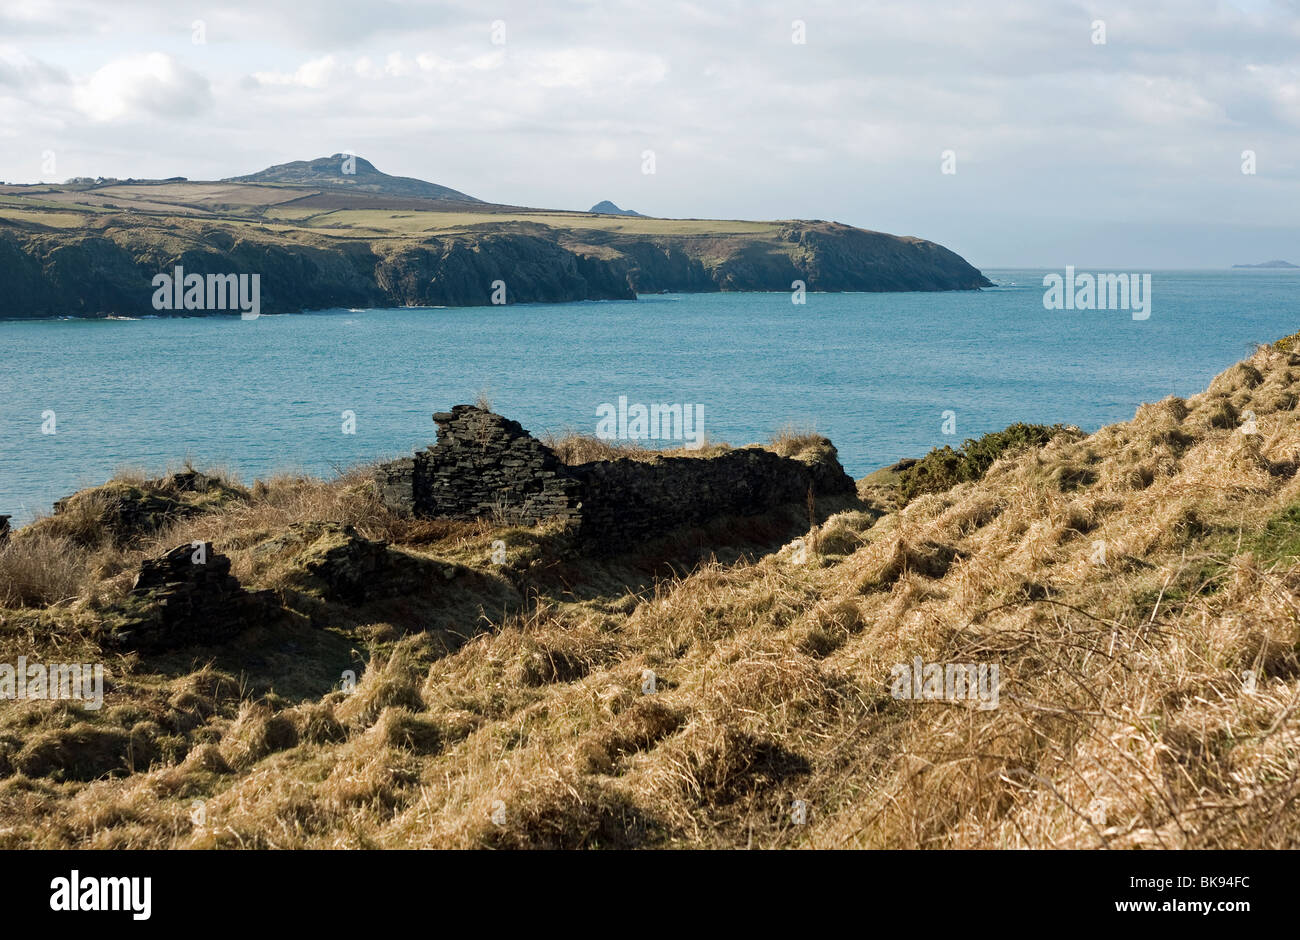 Vue depuis la falaise dominant Abereiddy dans l'ouest du pays de Galles Pembrokeshire Banque D'Images